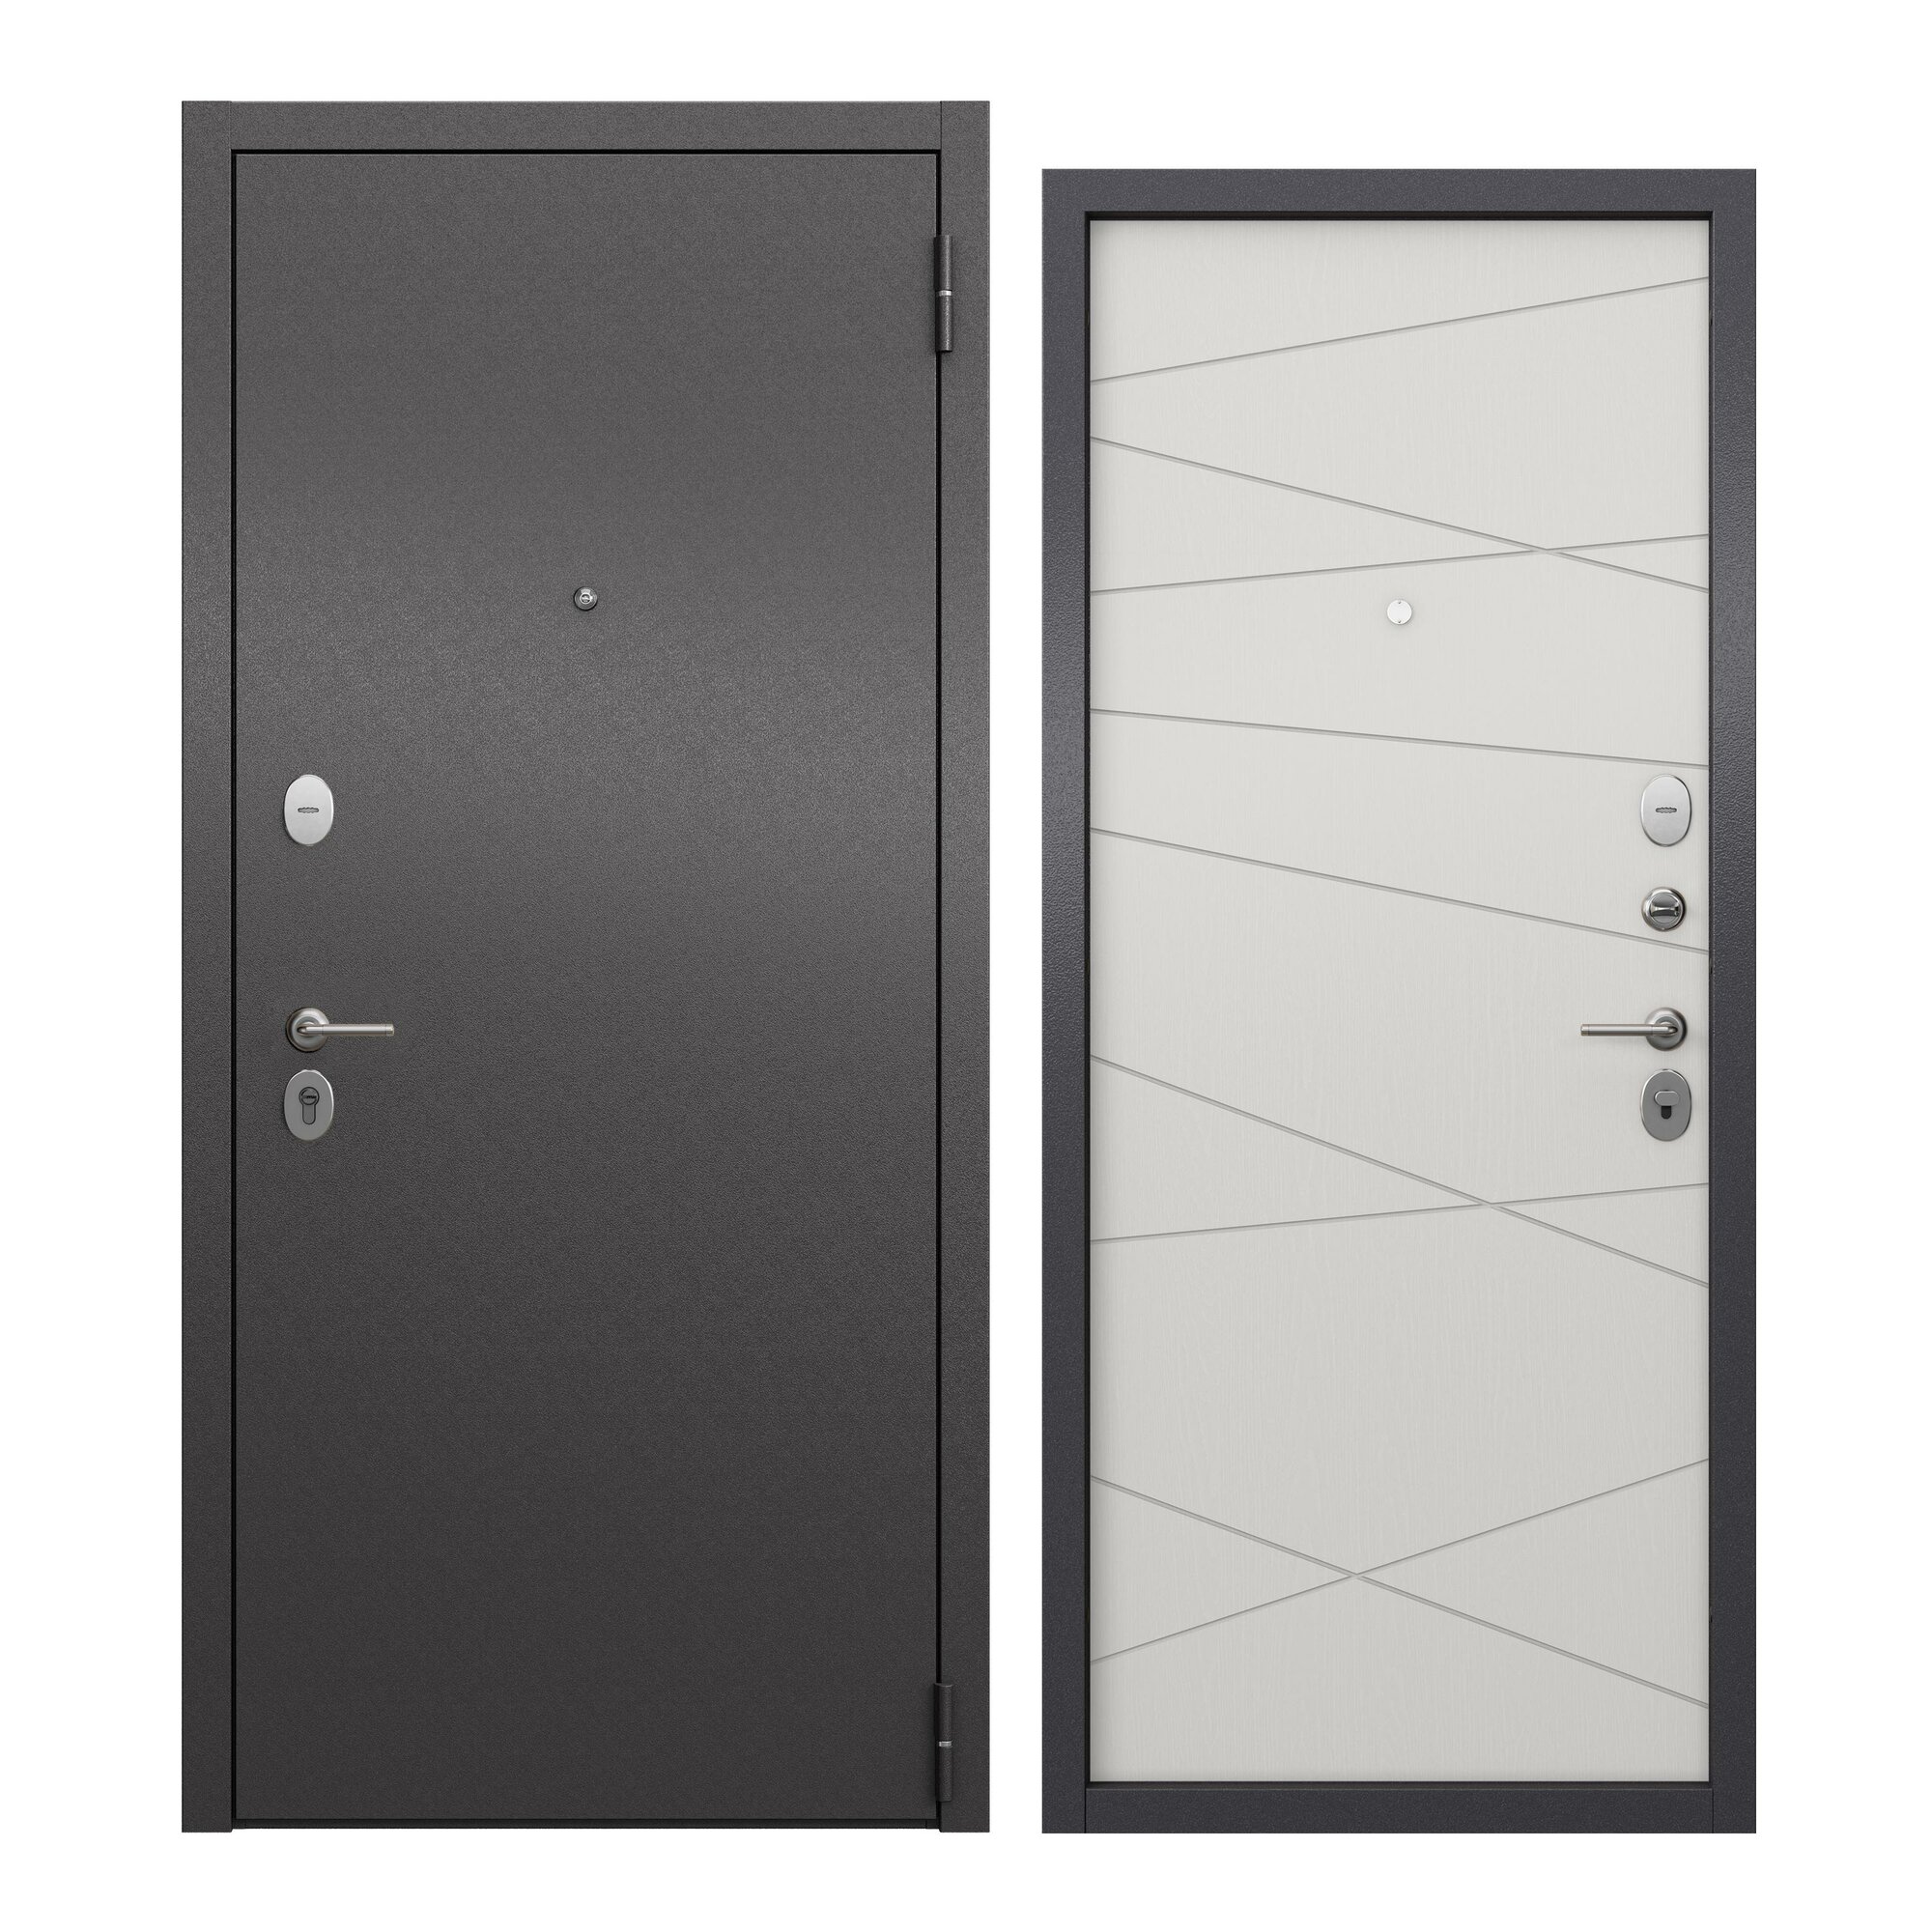 Дверь входная для квартиры ProLine металлическая Apartment X 960х2050 правая антивандальное покрытие два уплотнителя замки 4-го и 2-го класса